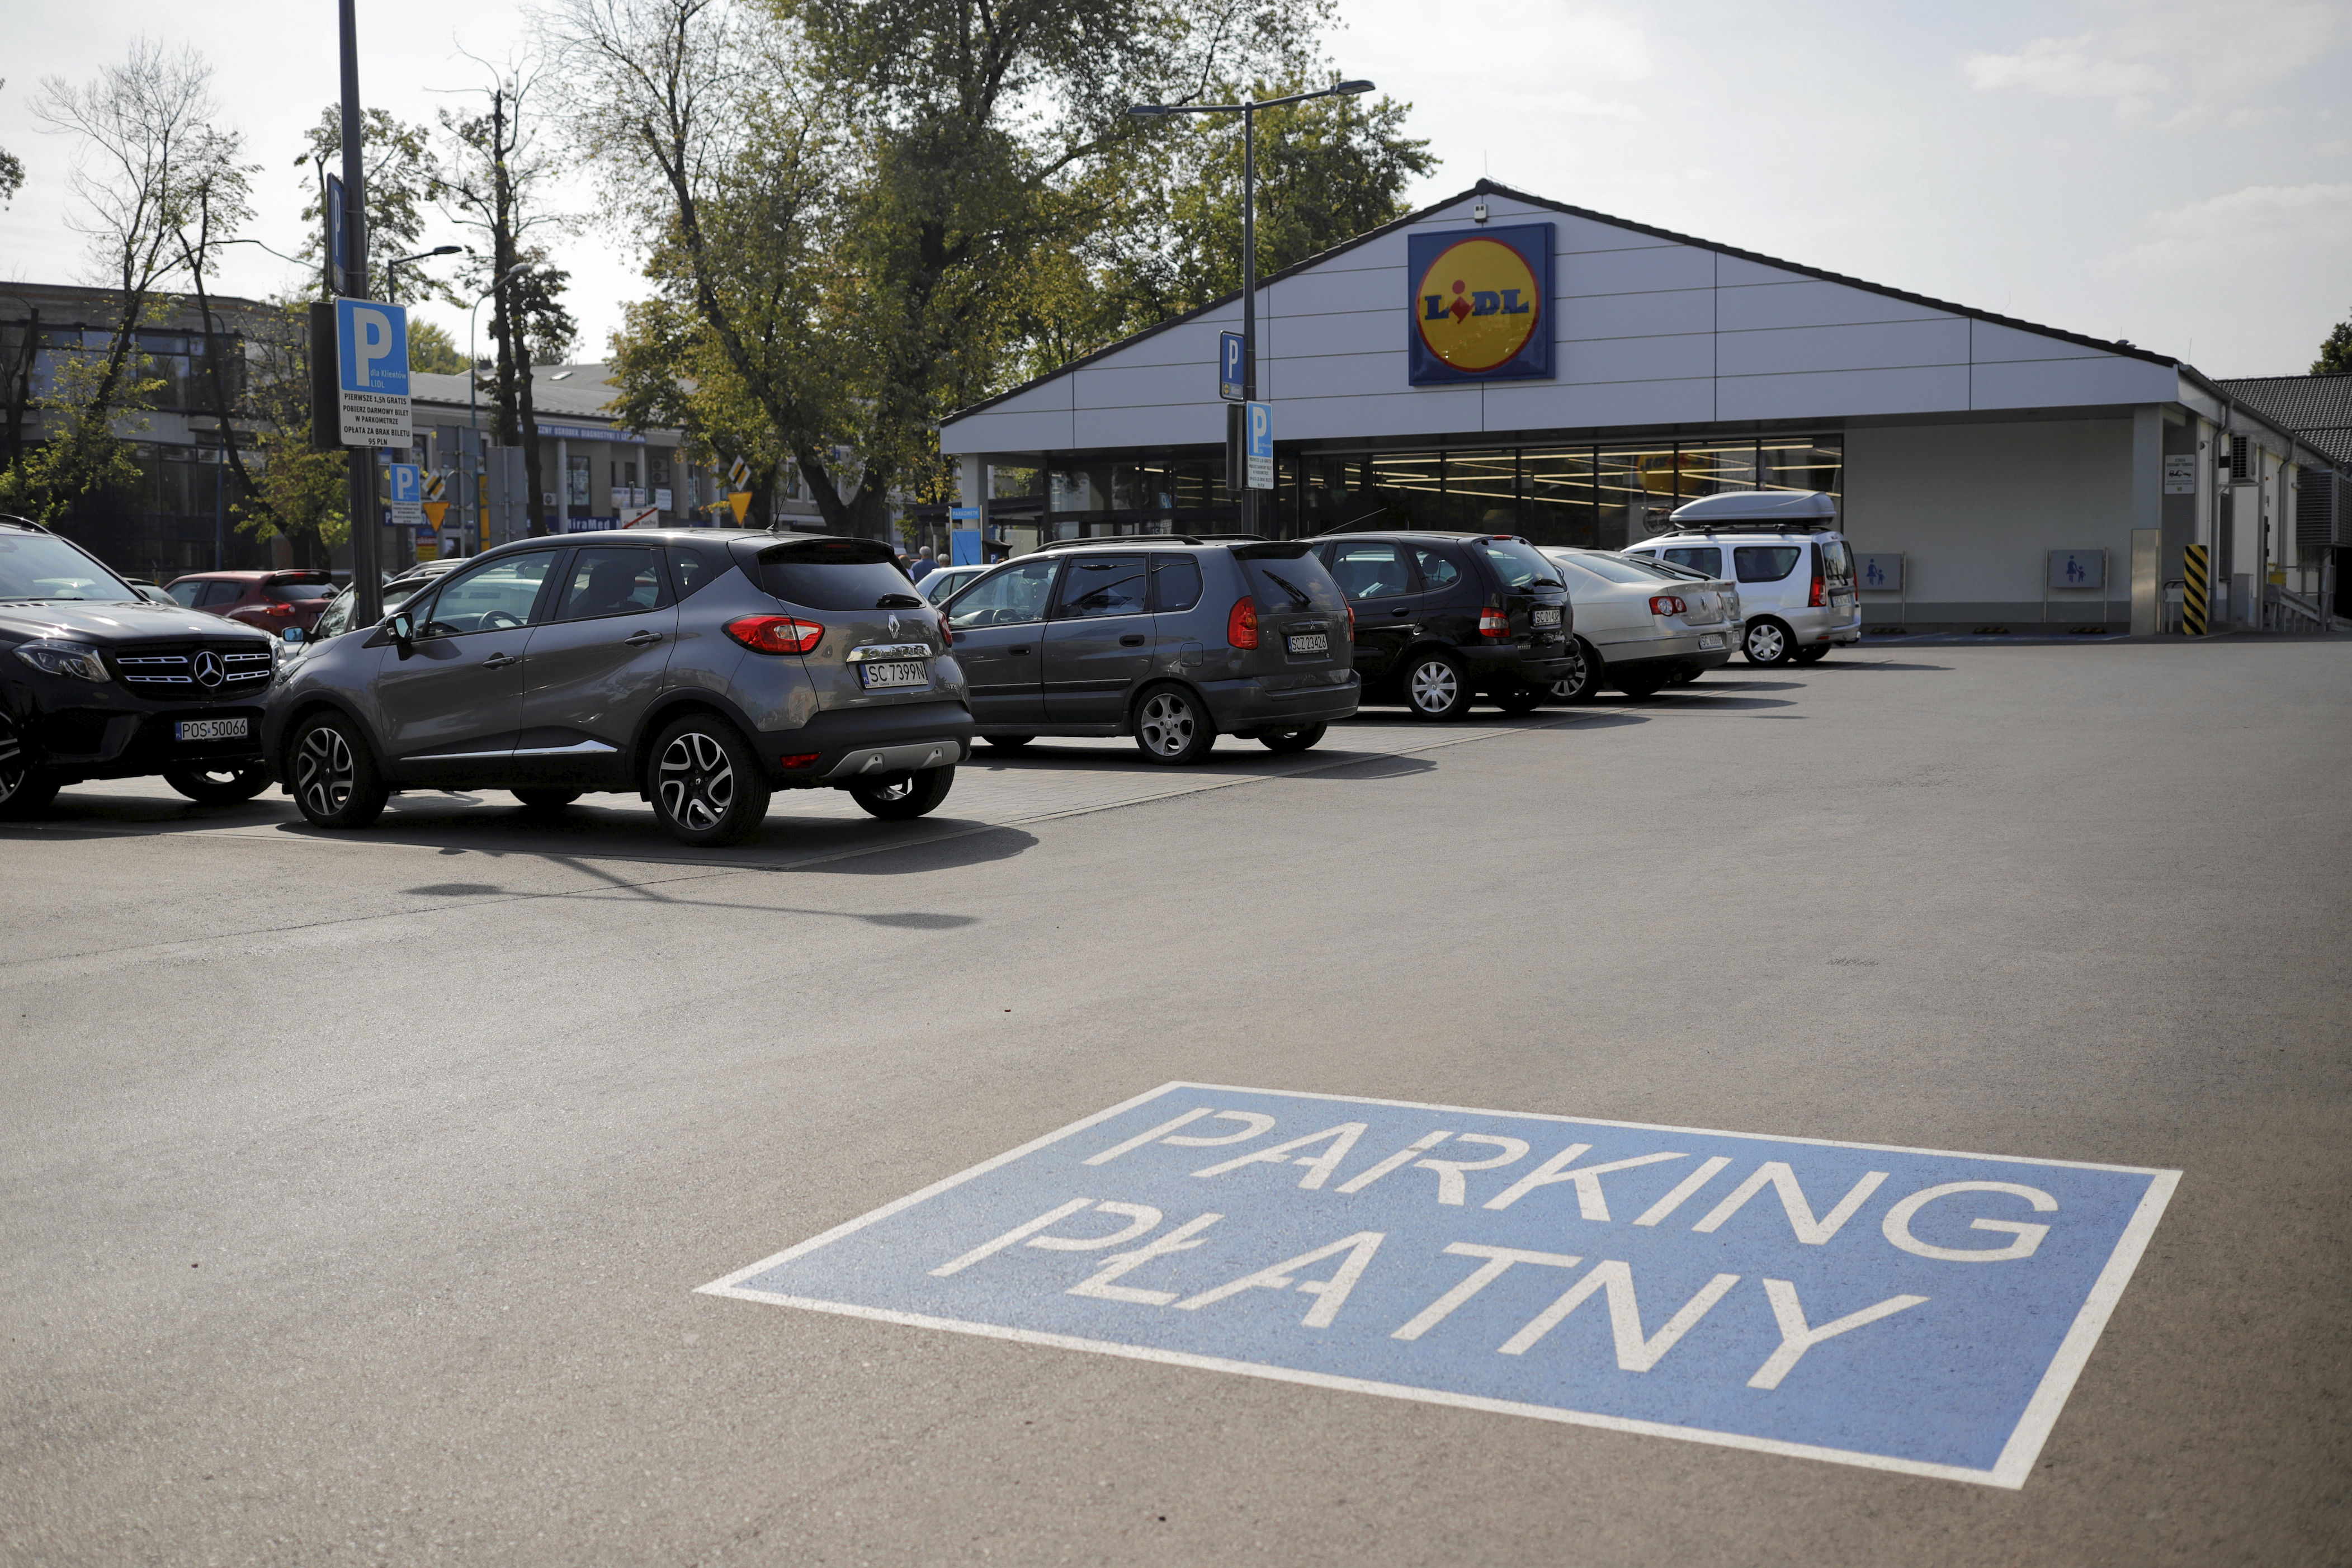 lidl szykuje rewolucję na swoich parkingach. do 2025 r. dotknie każdego sklepu